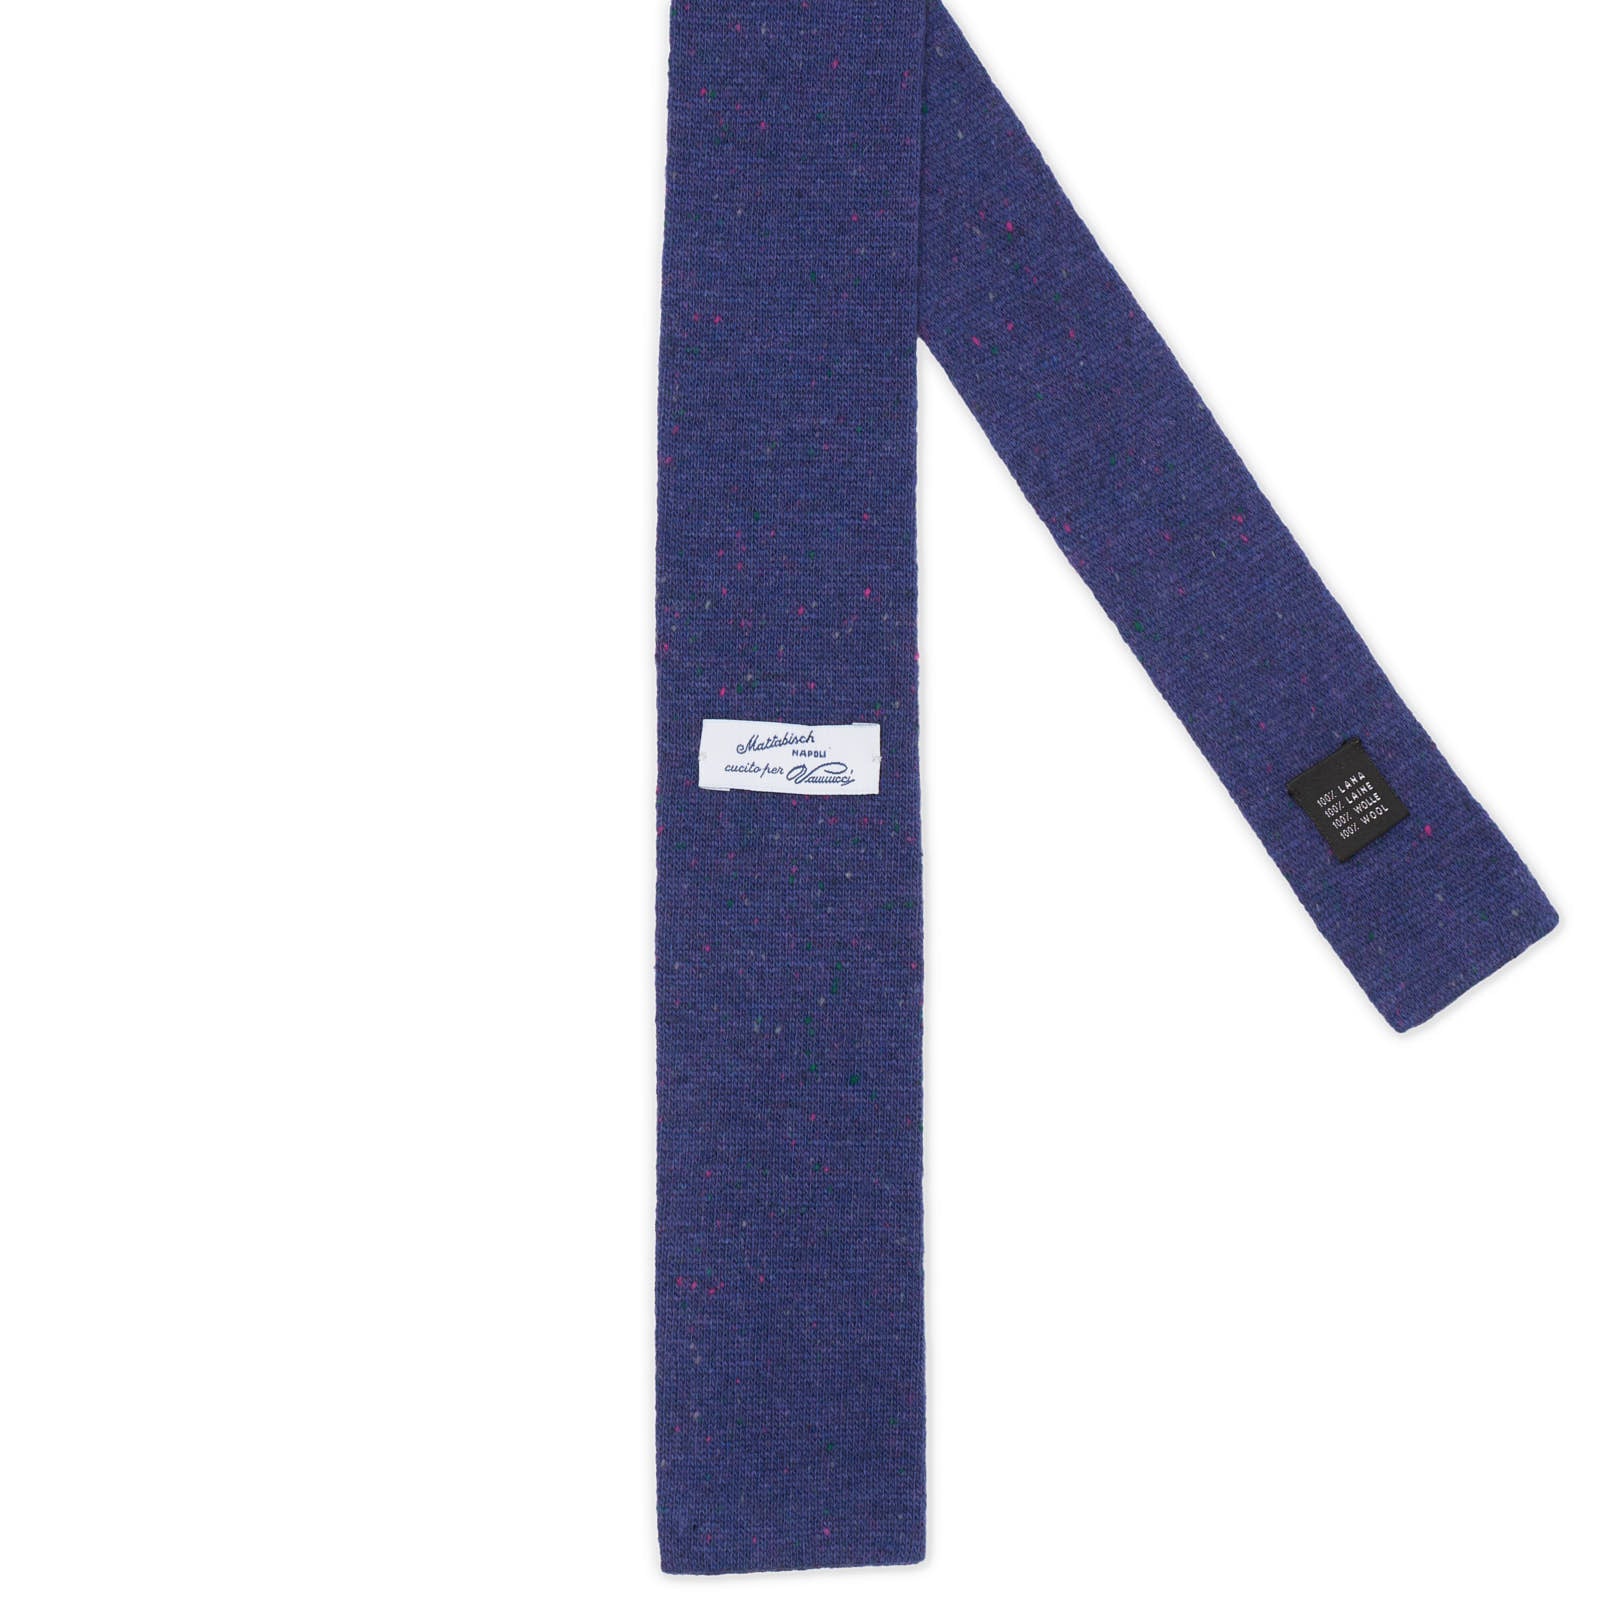 MATTABISCH FOR VANNUCCI Navy Blue Micro Pattern Wool Knit Tie NEW